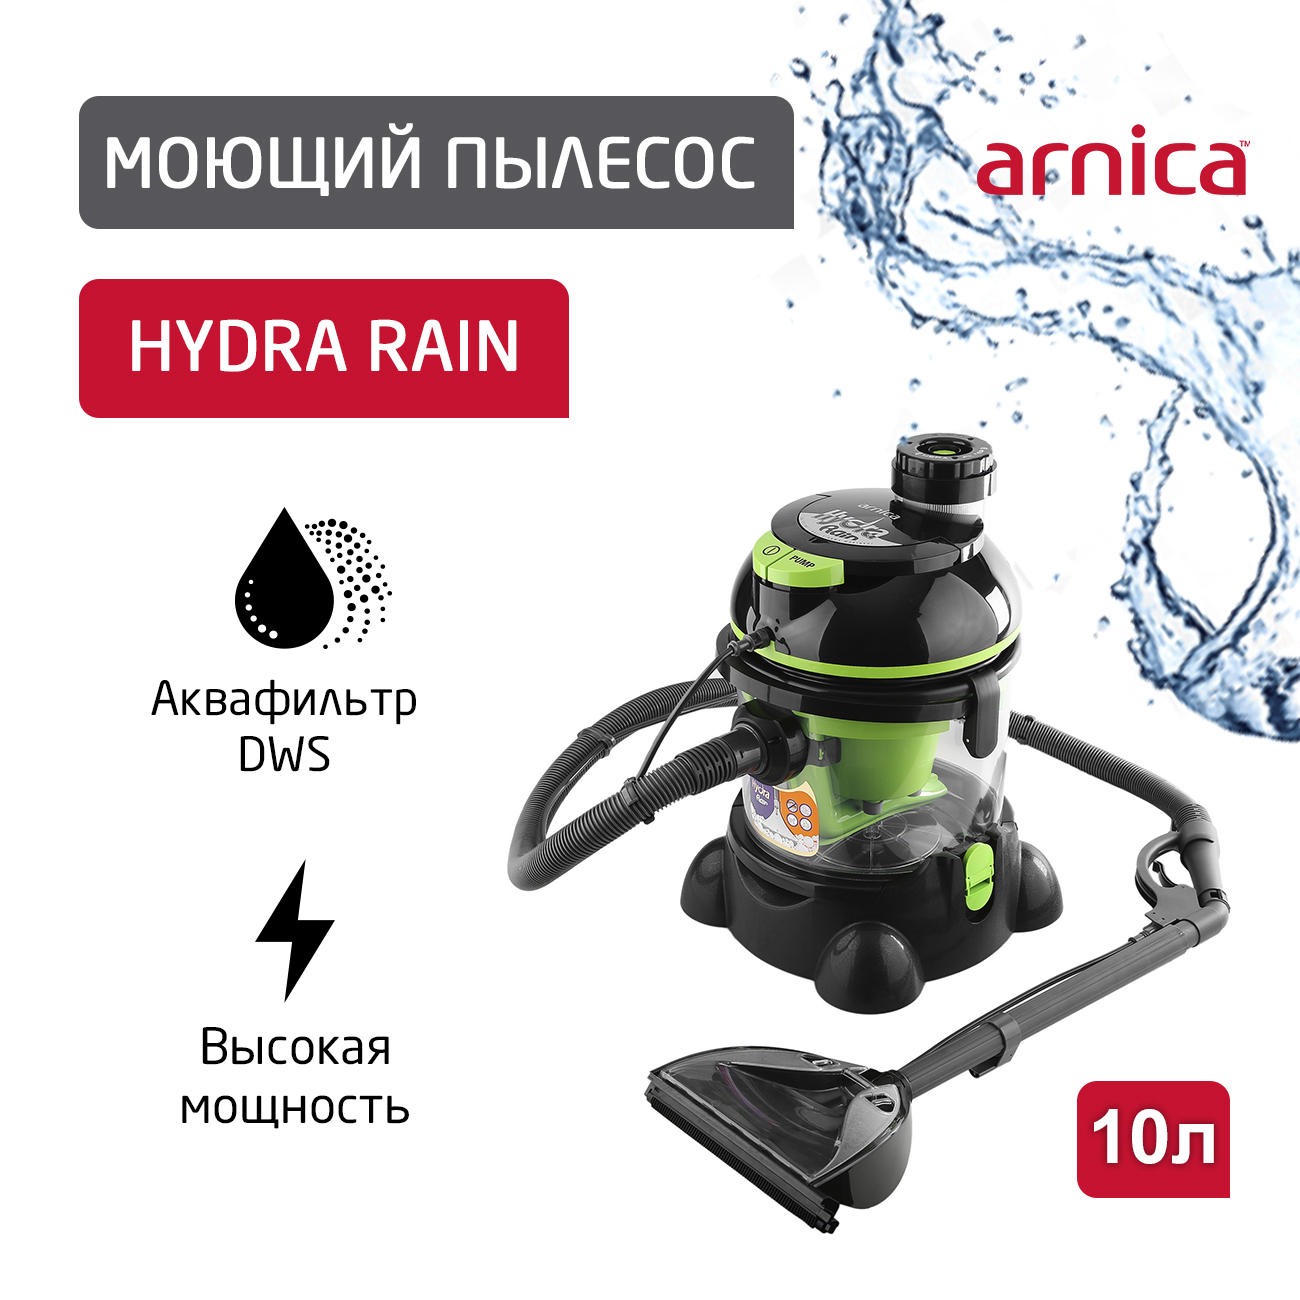 Пылесос ARNICA Hydra Rain зеленый, черный пылесос arnica hydra rain зеленый